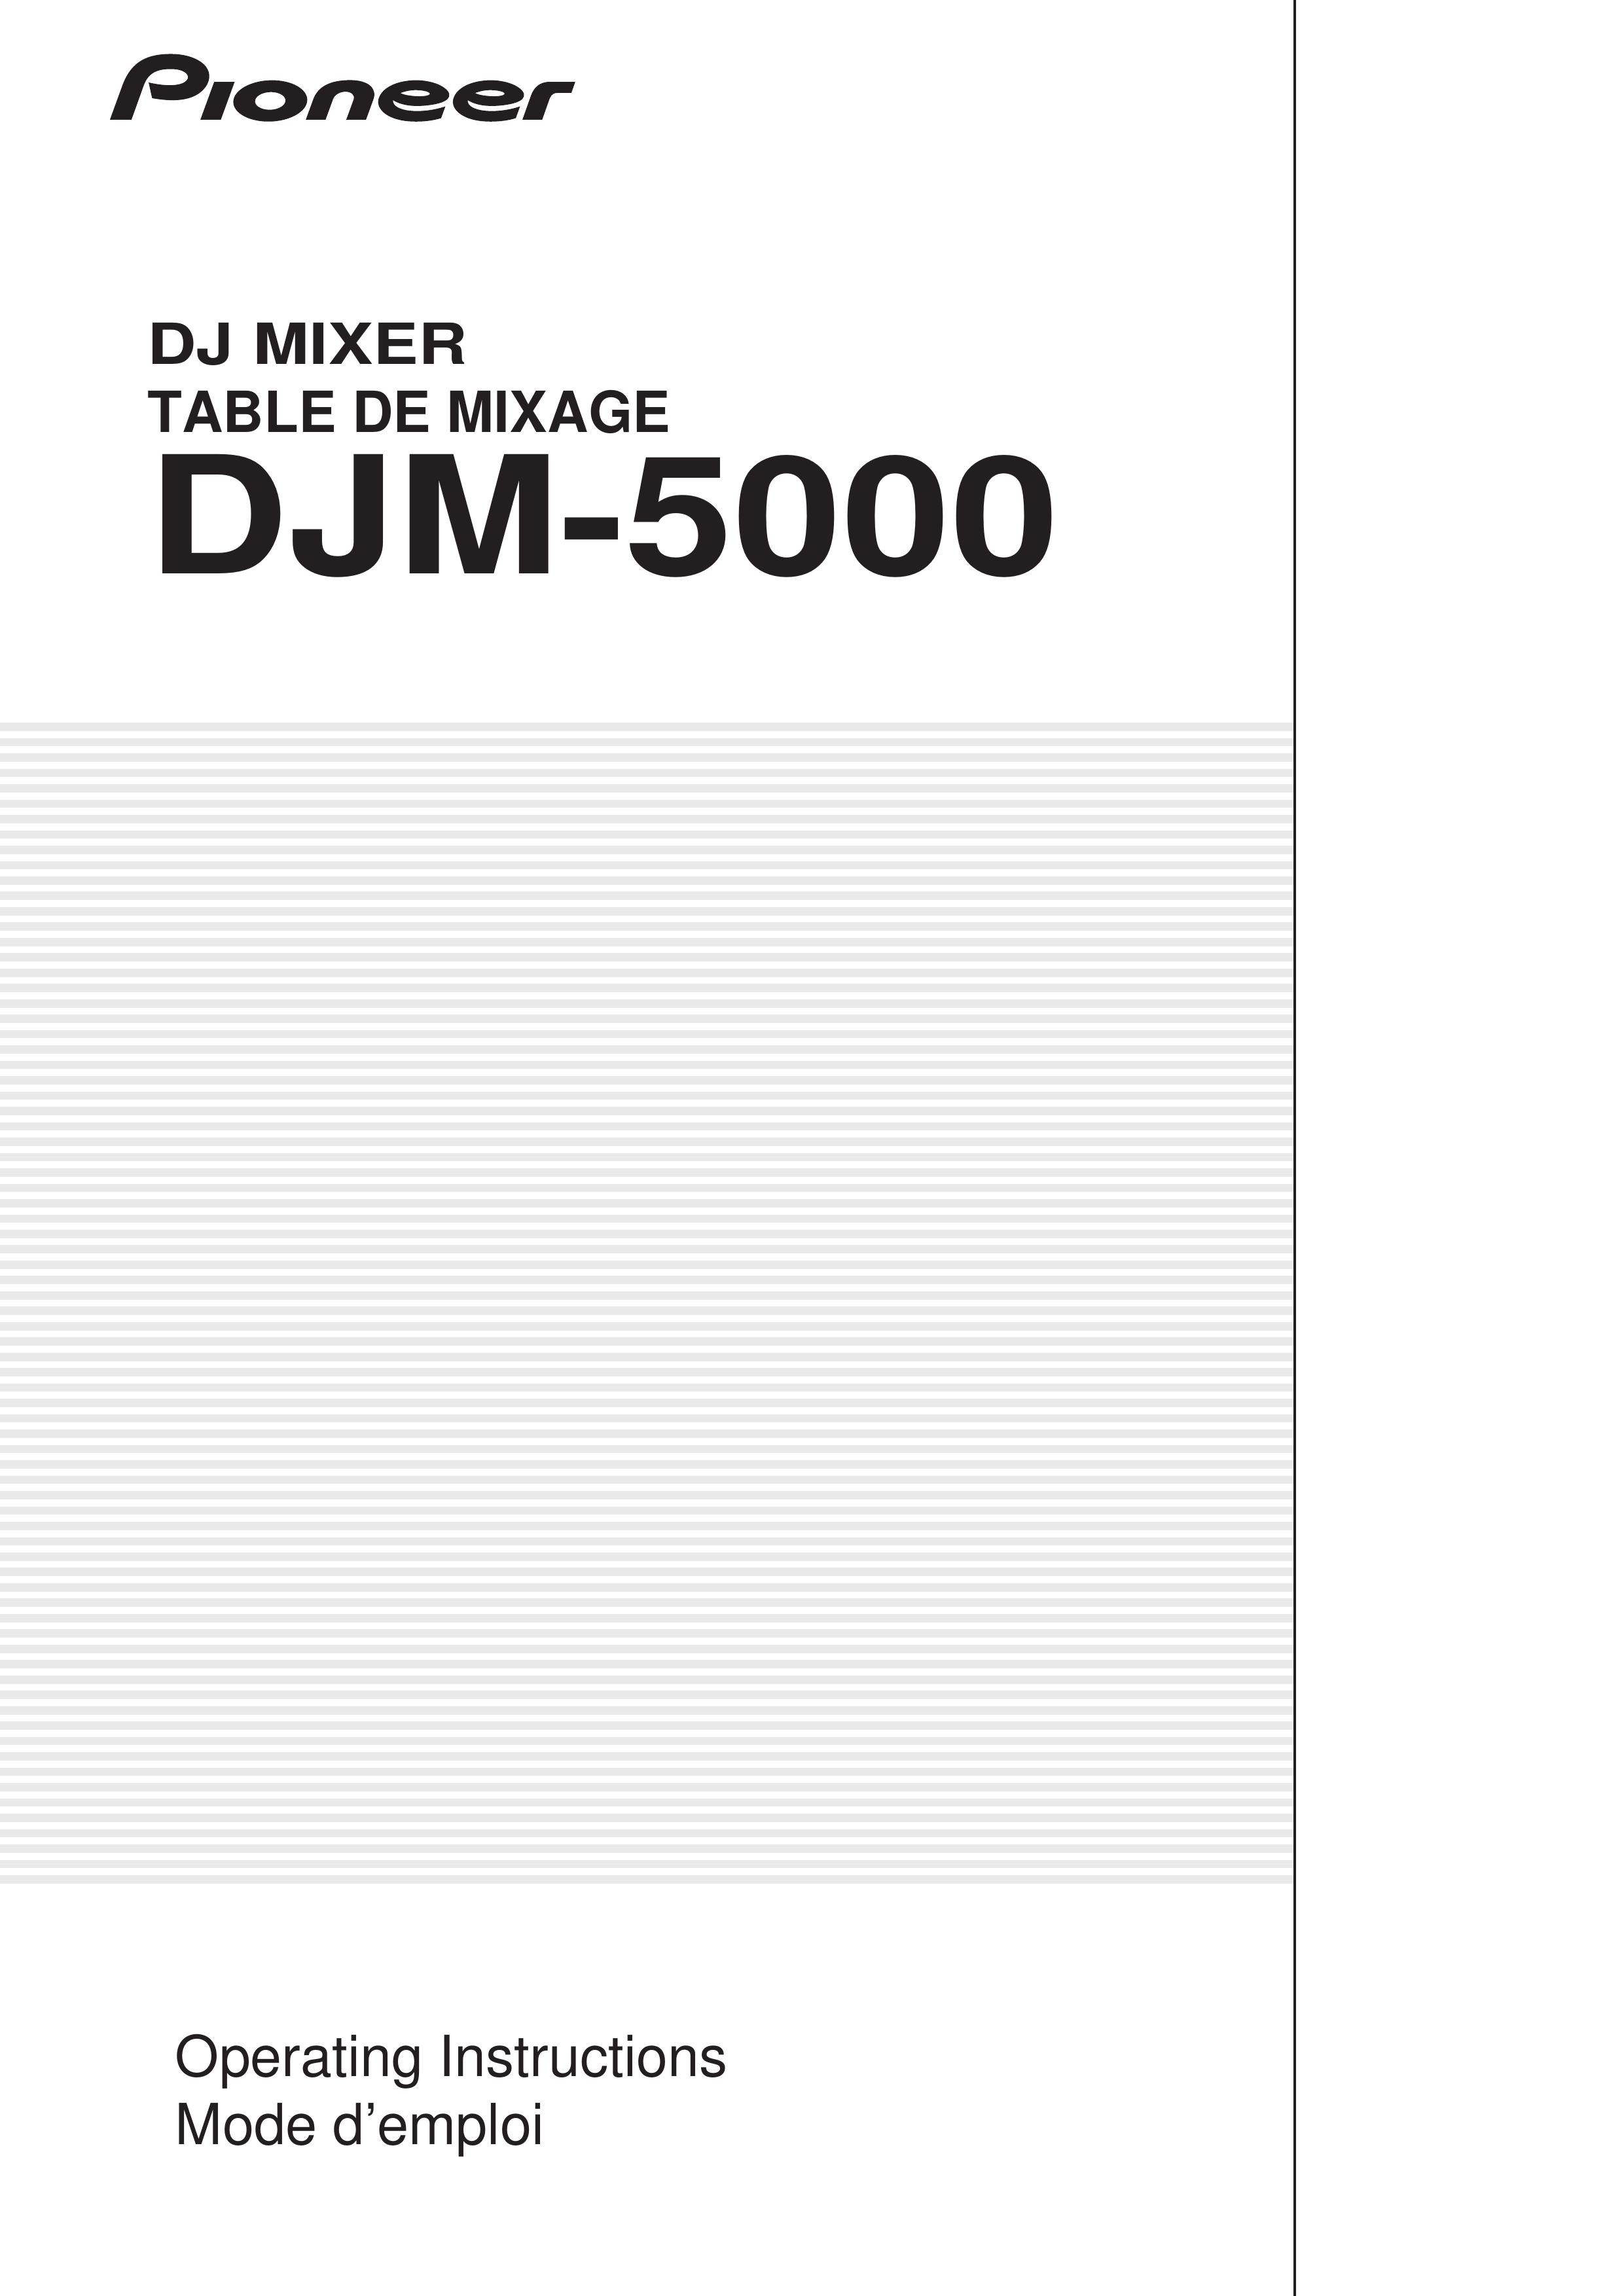 Pioneer DJM-5000 Music Mixer User Manual